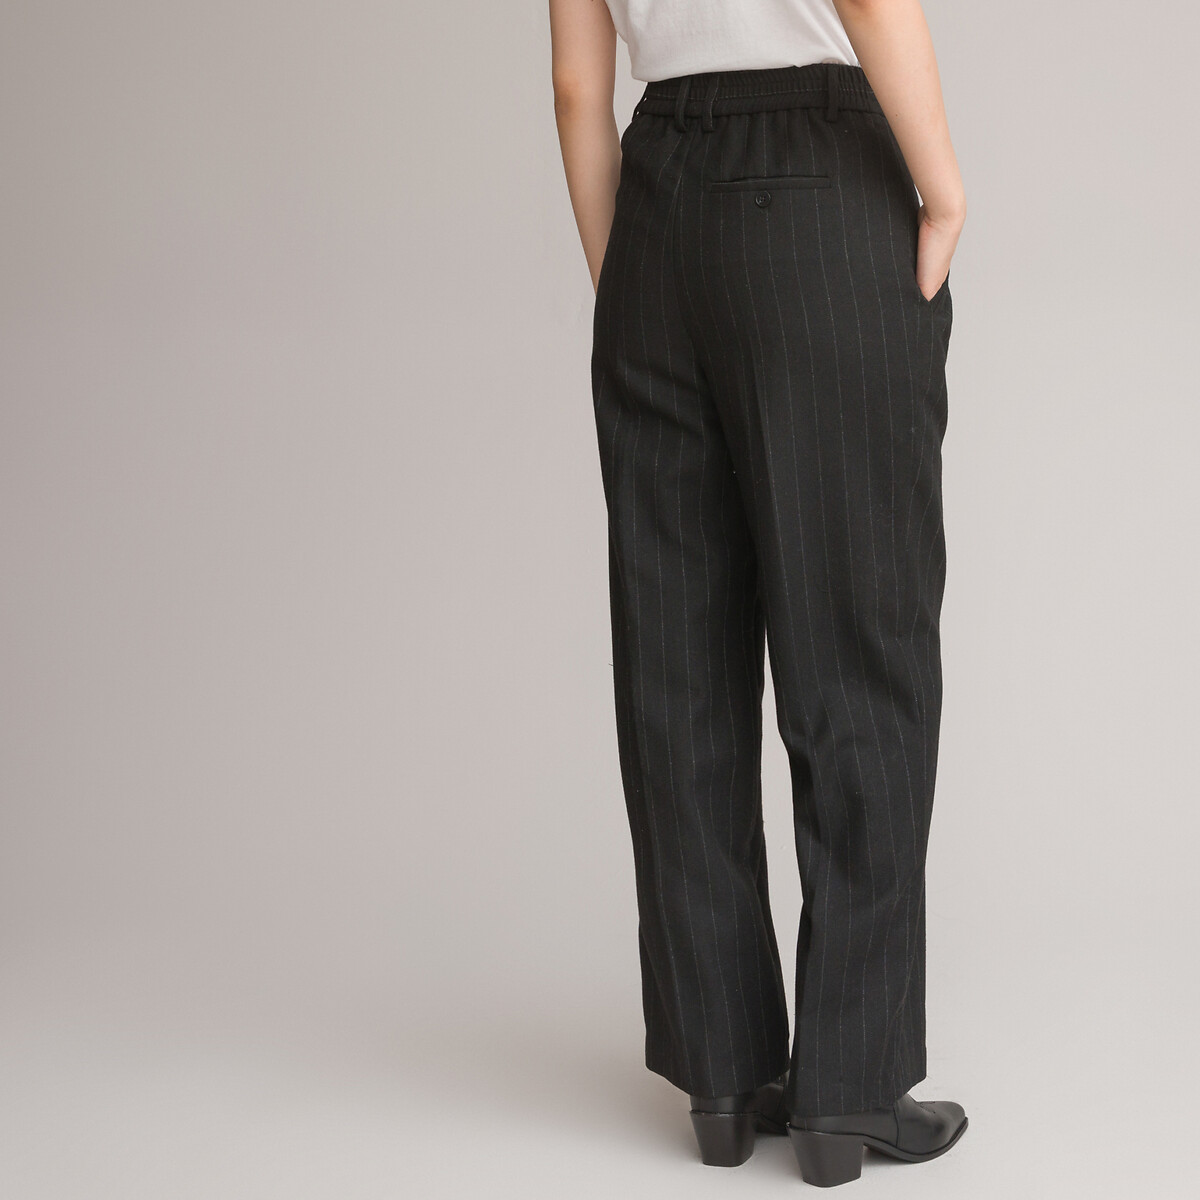 Pantalon rayé large GALA - Polyester & cupro noir - Mode éthique